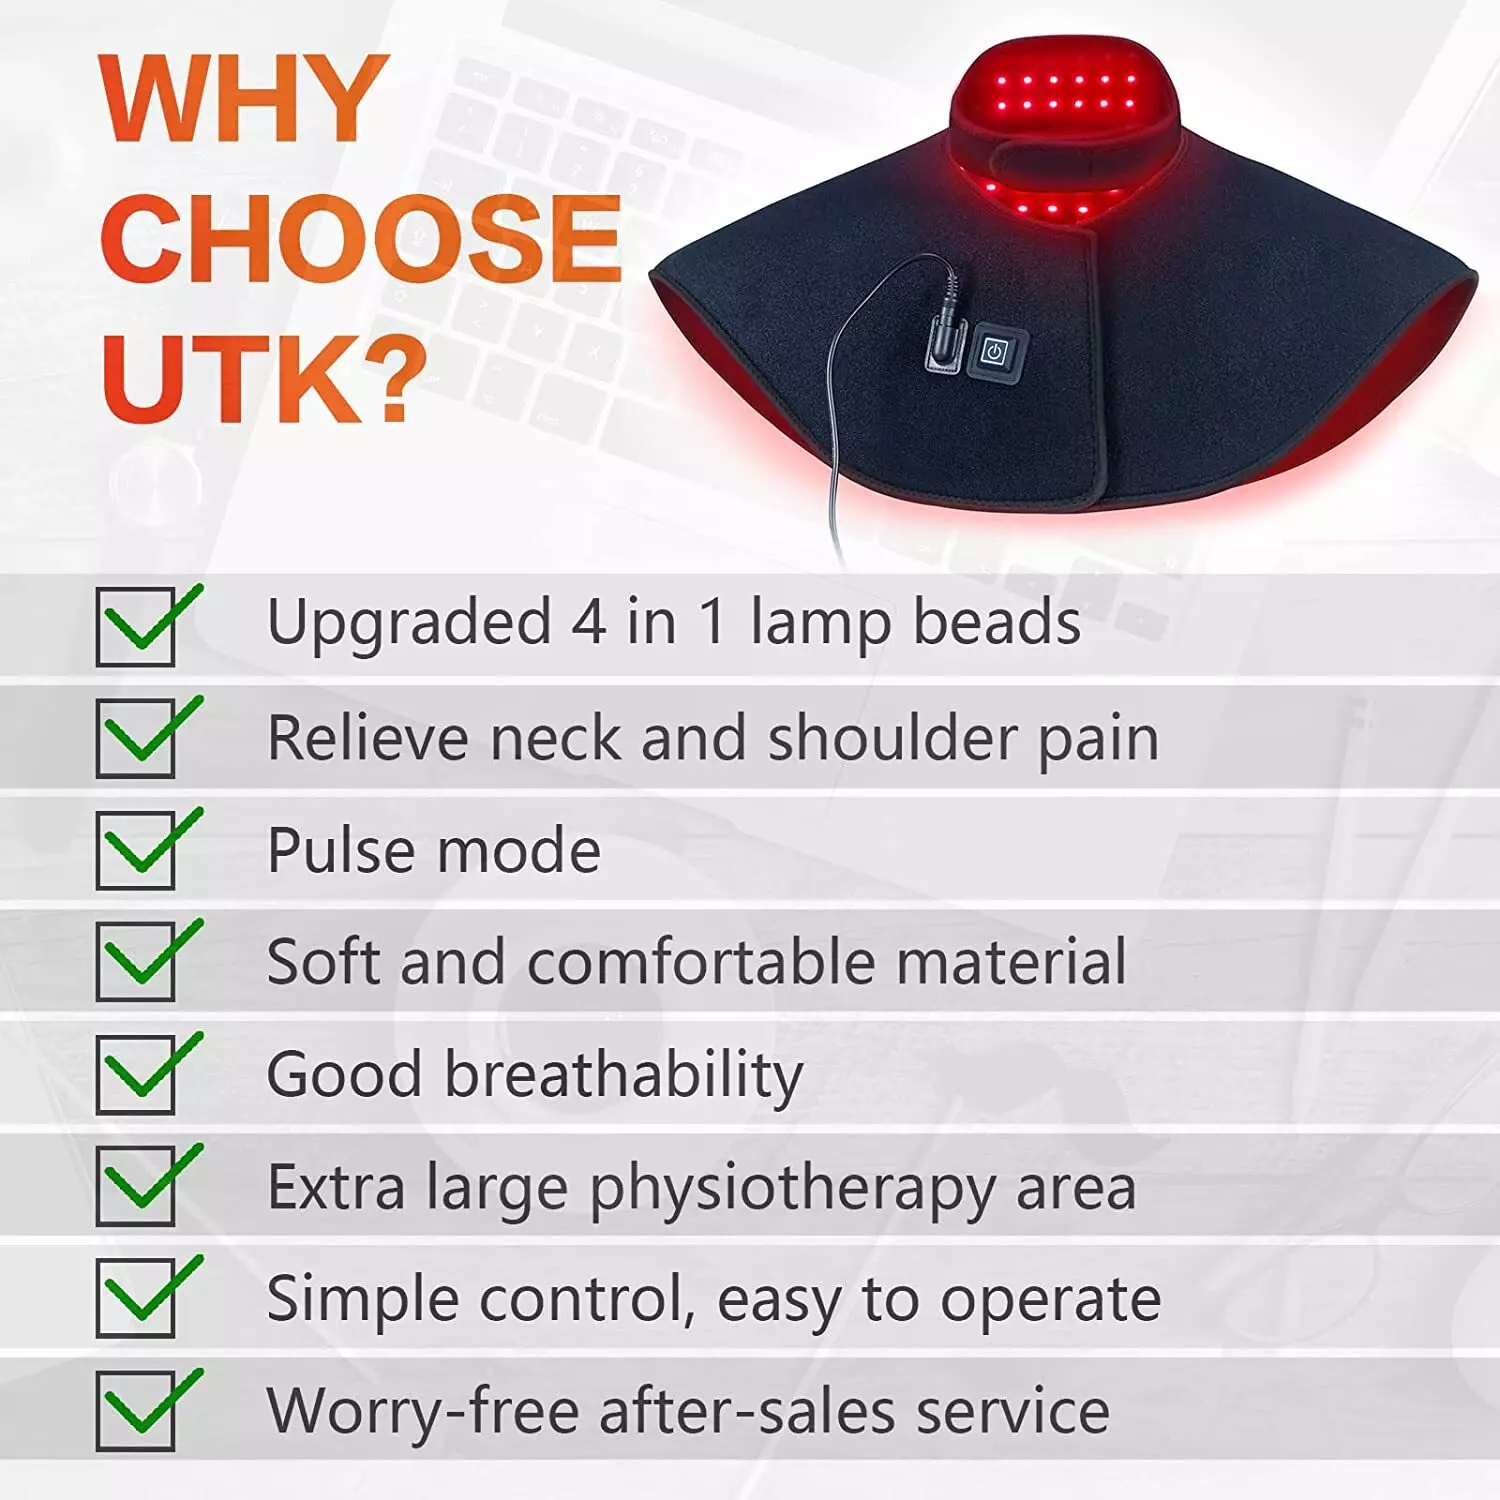 Thérapie par la lumière rouge UTK pour le soulagement de la douleur au cou et aux épaules, lumières LED améliorées 4 en 1, 3 x 660 nm et 1 x 850 nm Thérapie infrarouge proche et rouge pour le cou, les épaules et le haut du dos pour éliminer l'inflammation 5